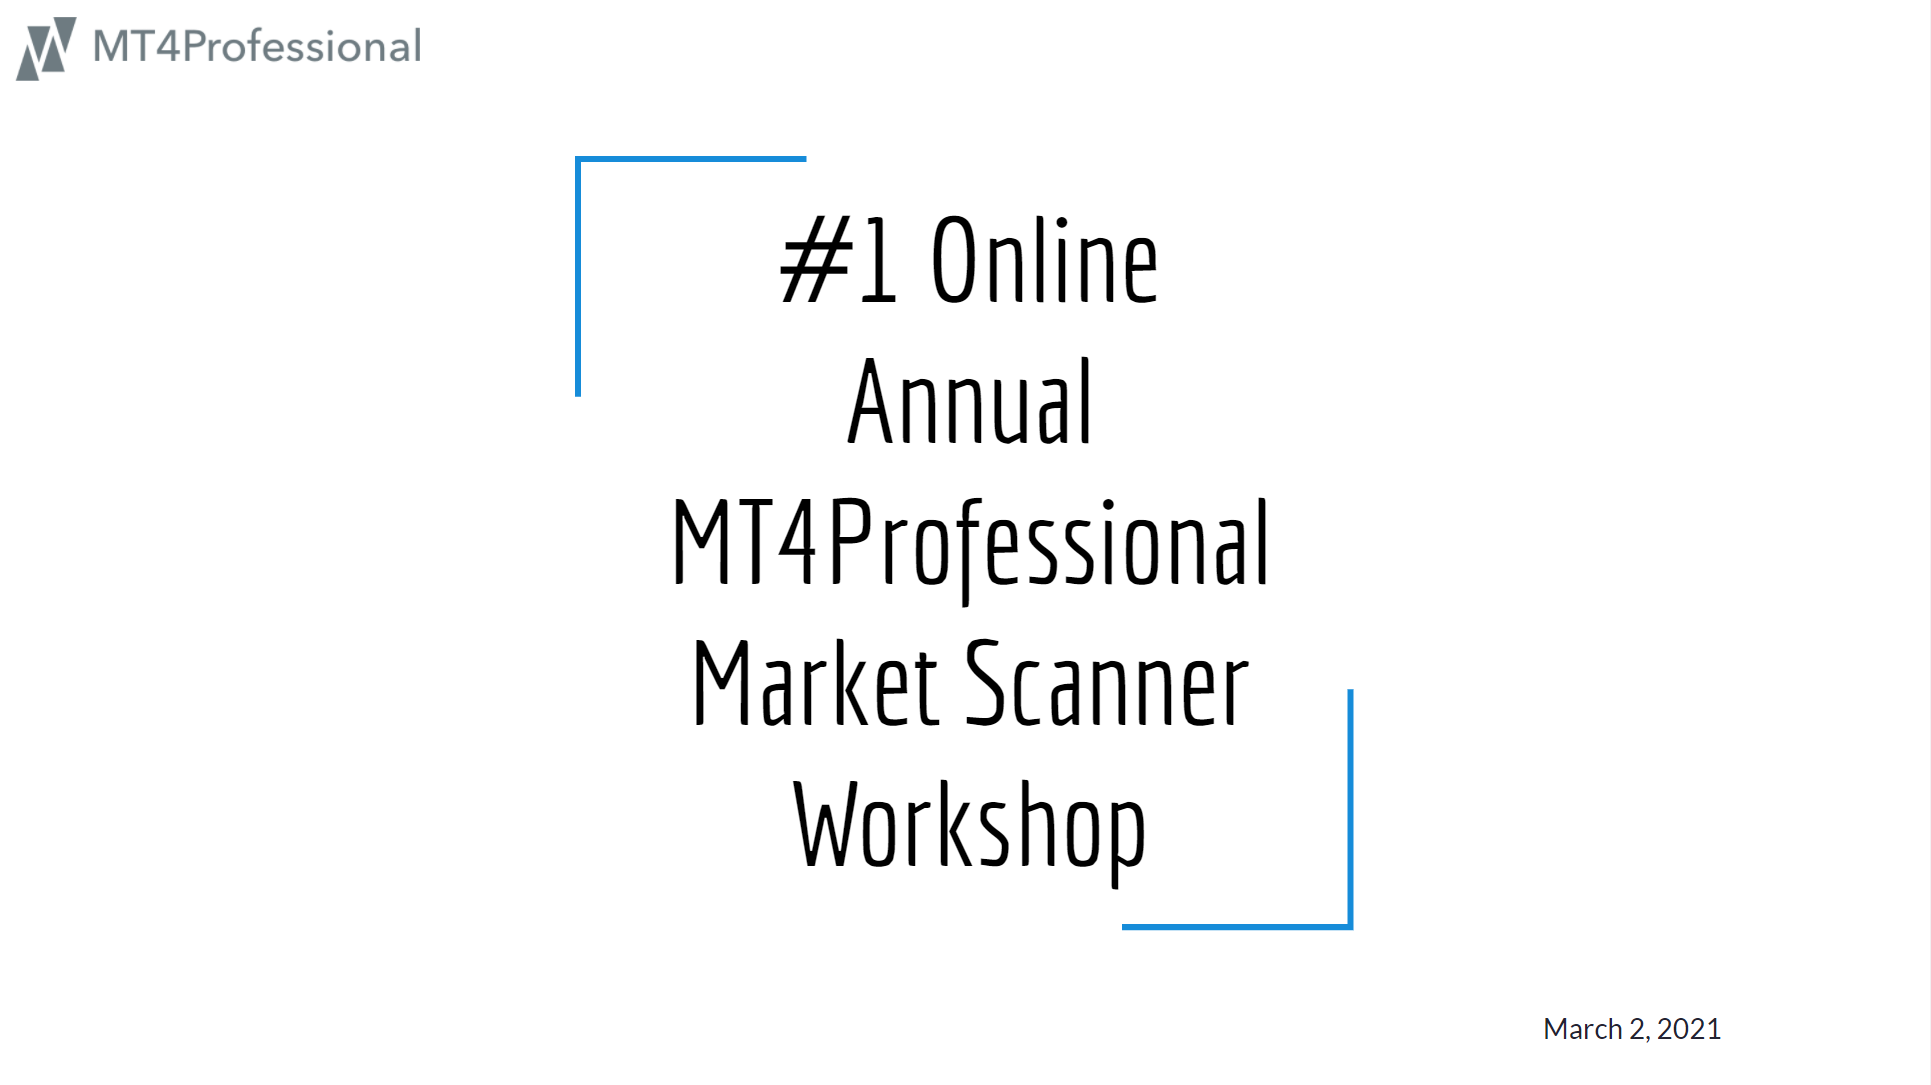 #1 Online Annual MT4Professional Market Scanner Workshop - One week after